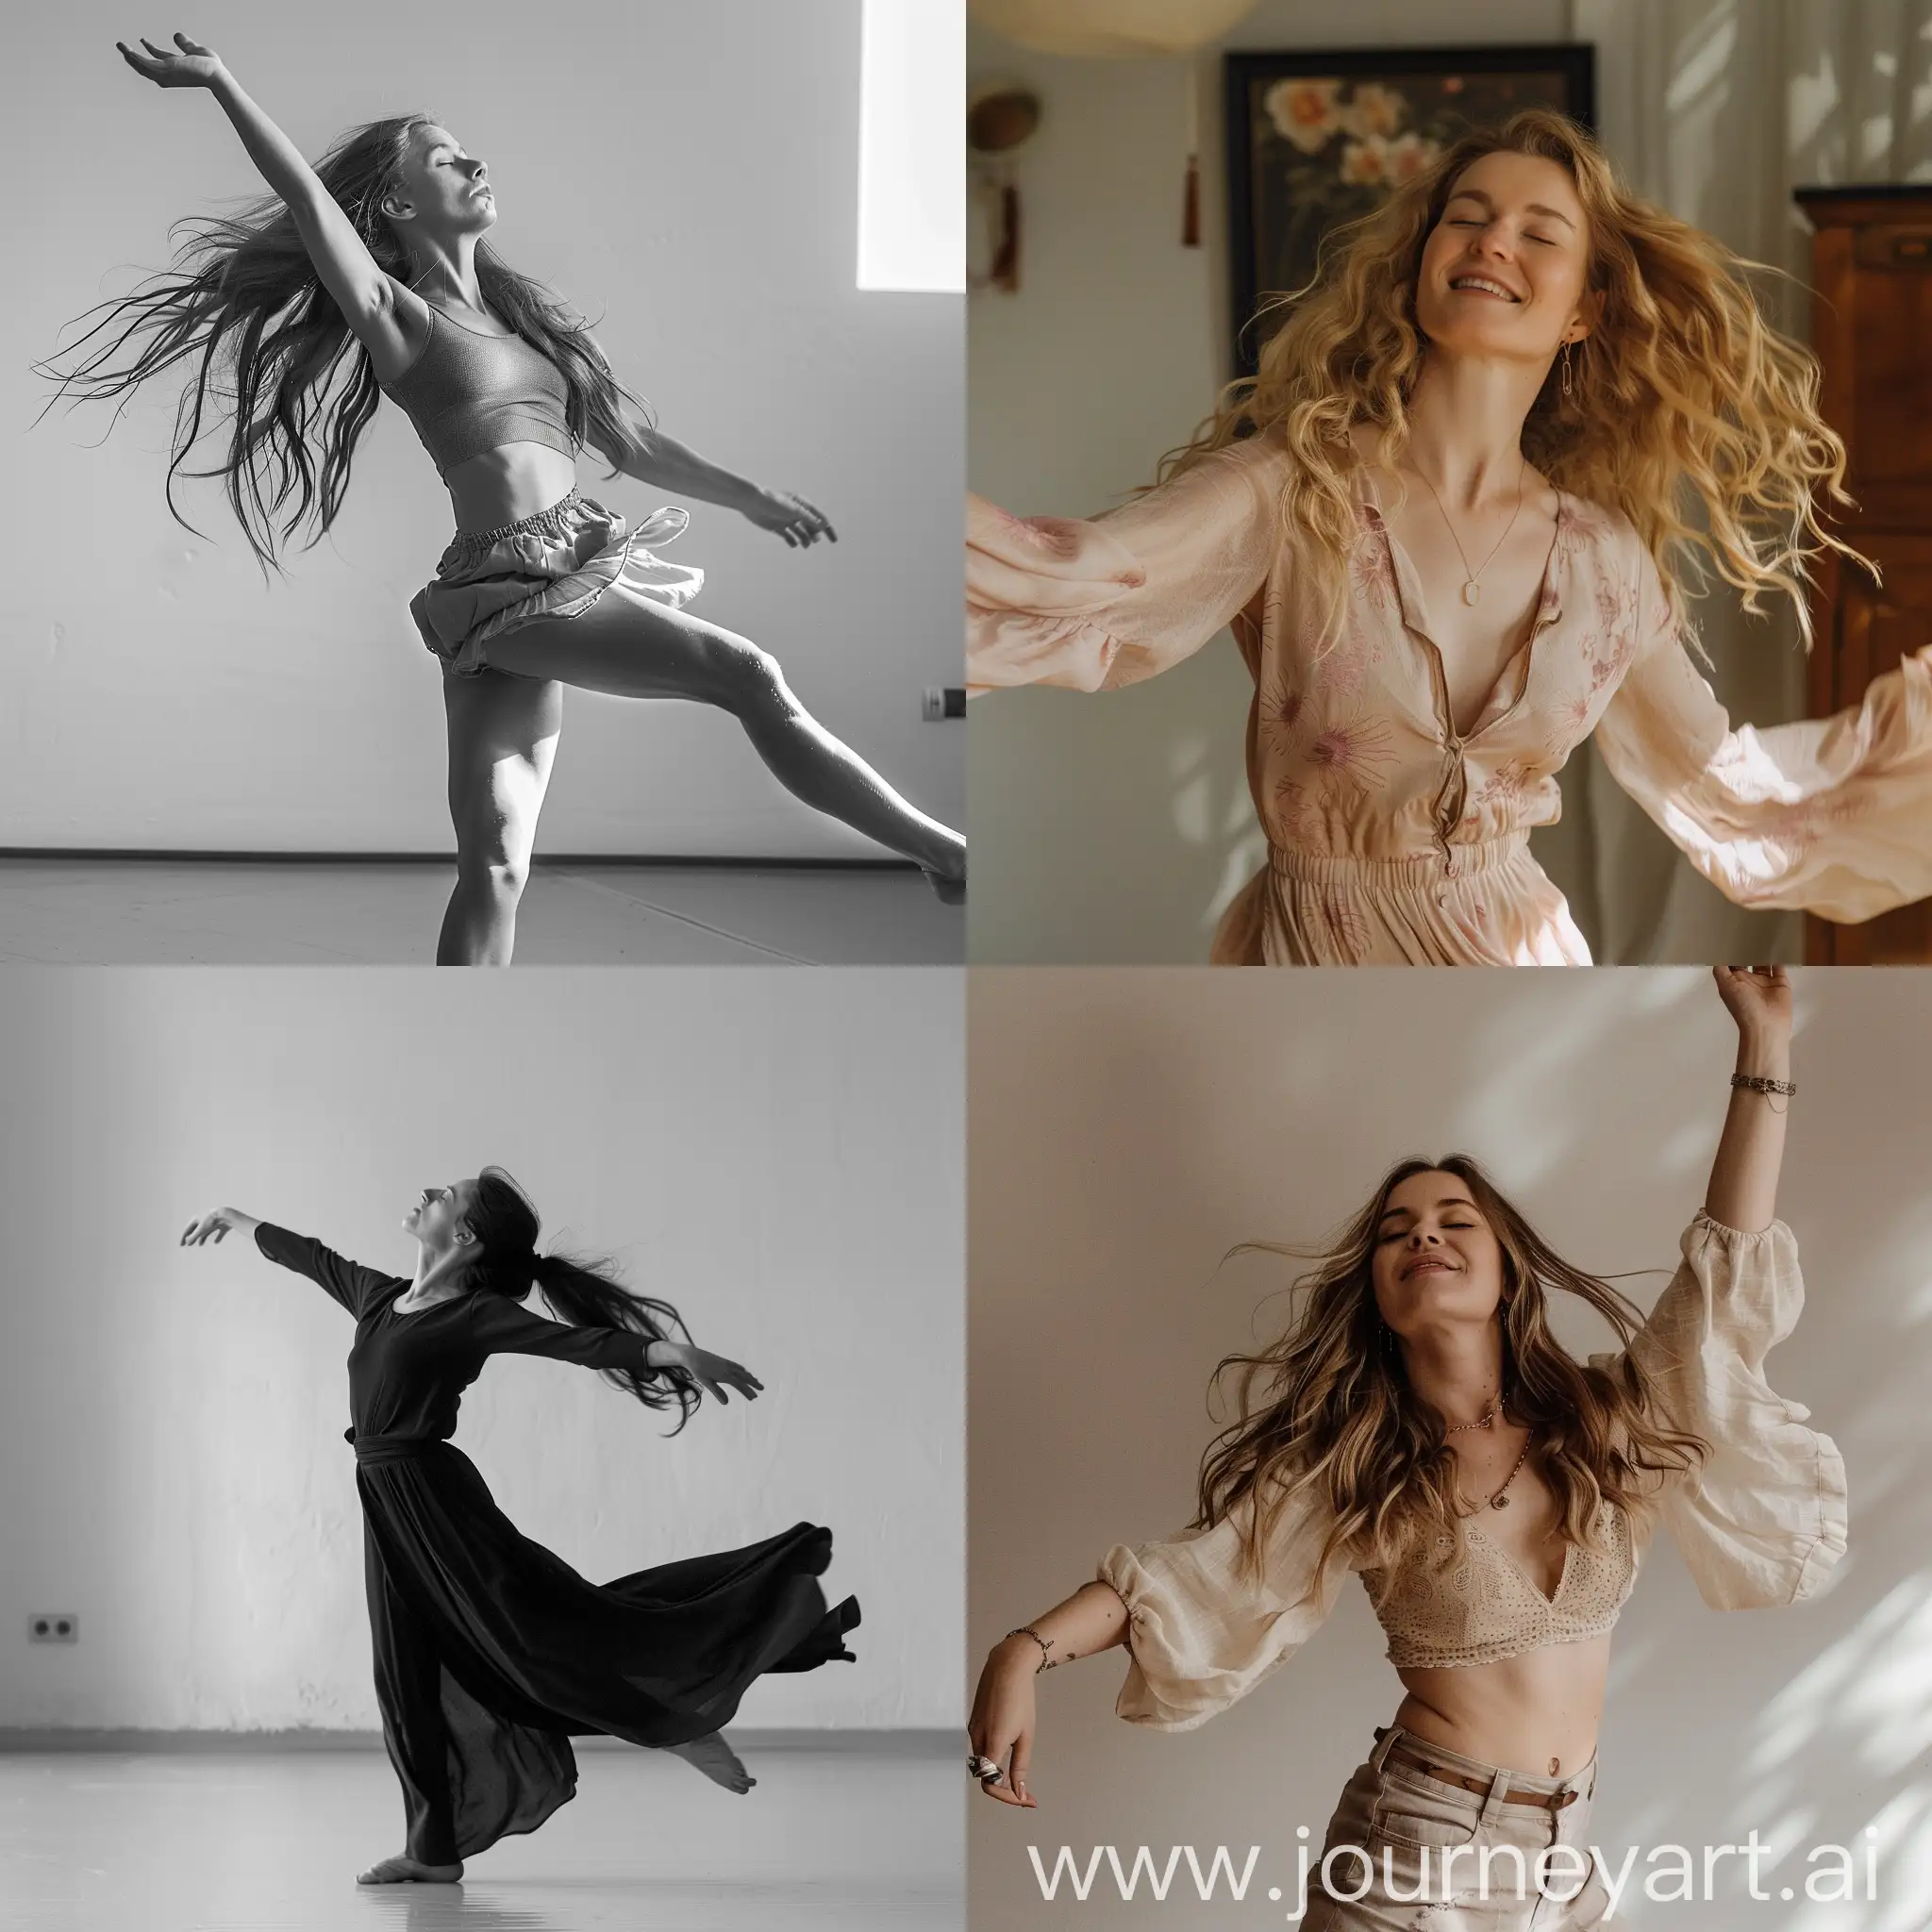 Sanna-Marin-Dancing-in-Vibrant-Ambiance